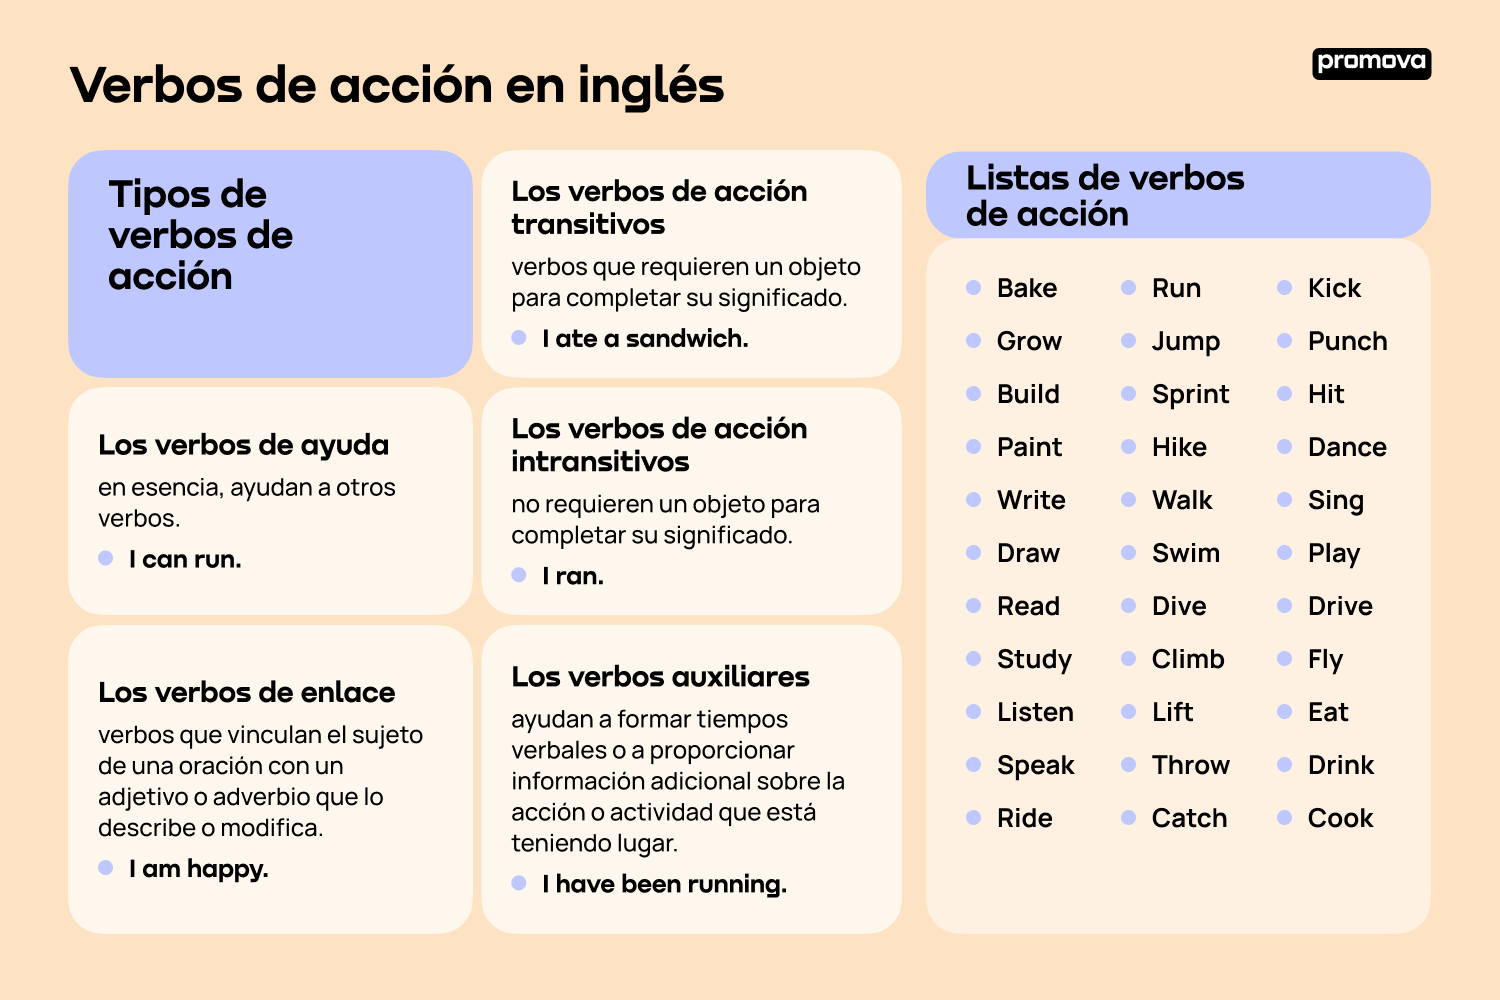 Guía completa de verbos de acción en inglés con ejemplos prácticos